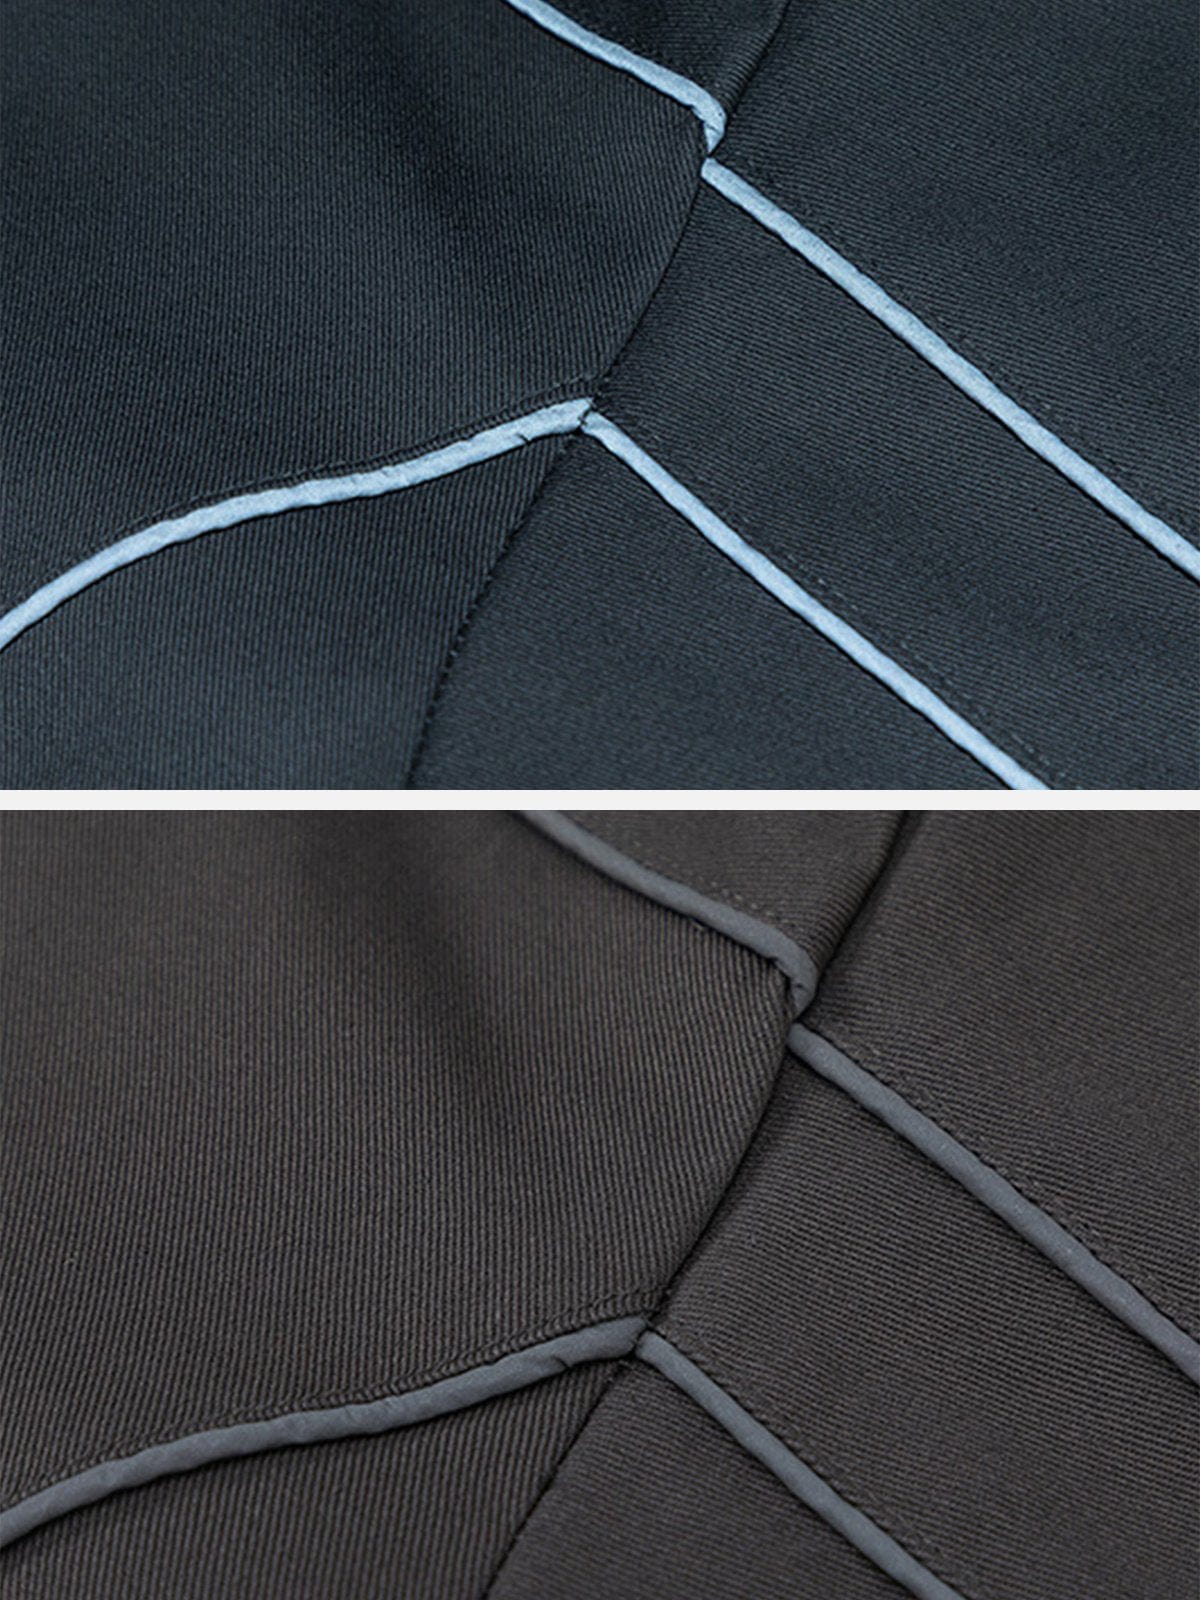 NEV Solid Color Reflective Stripe Jacket